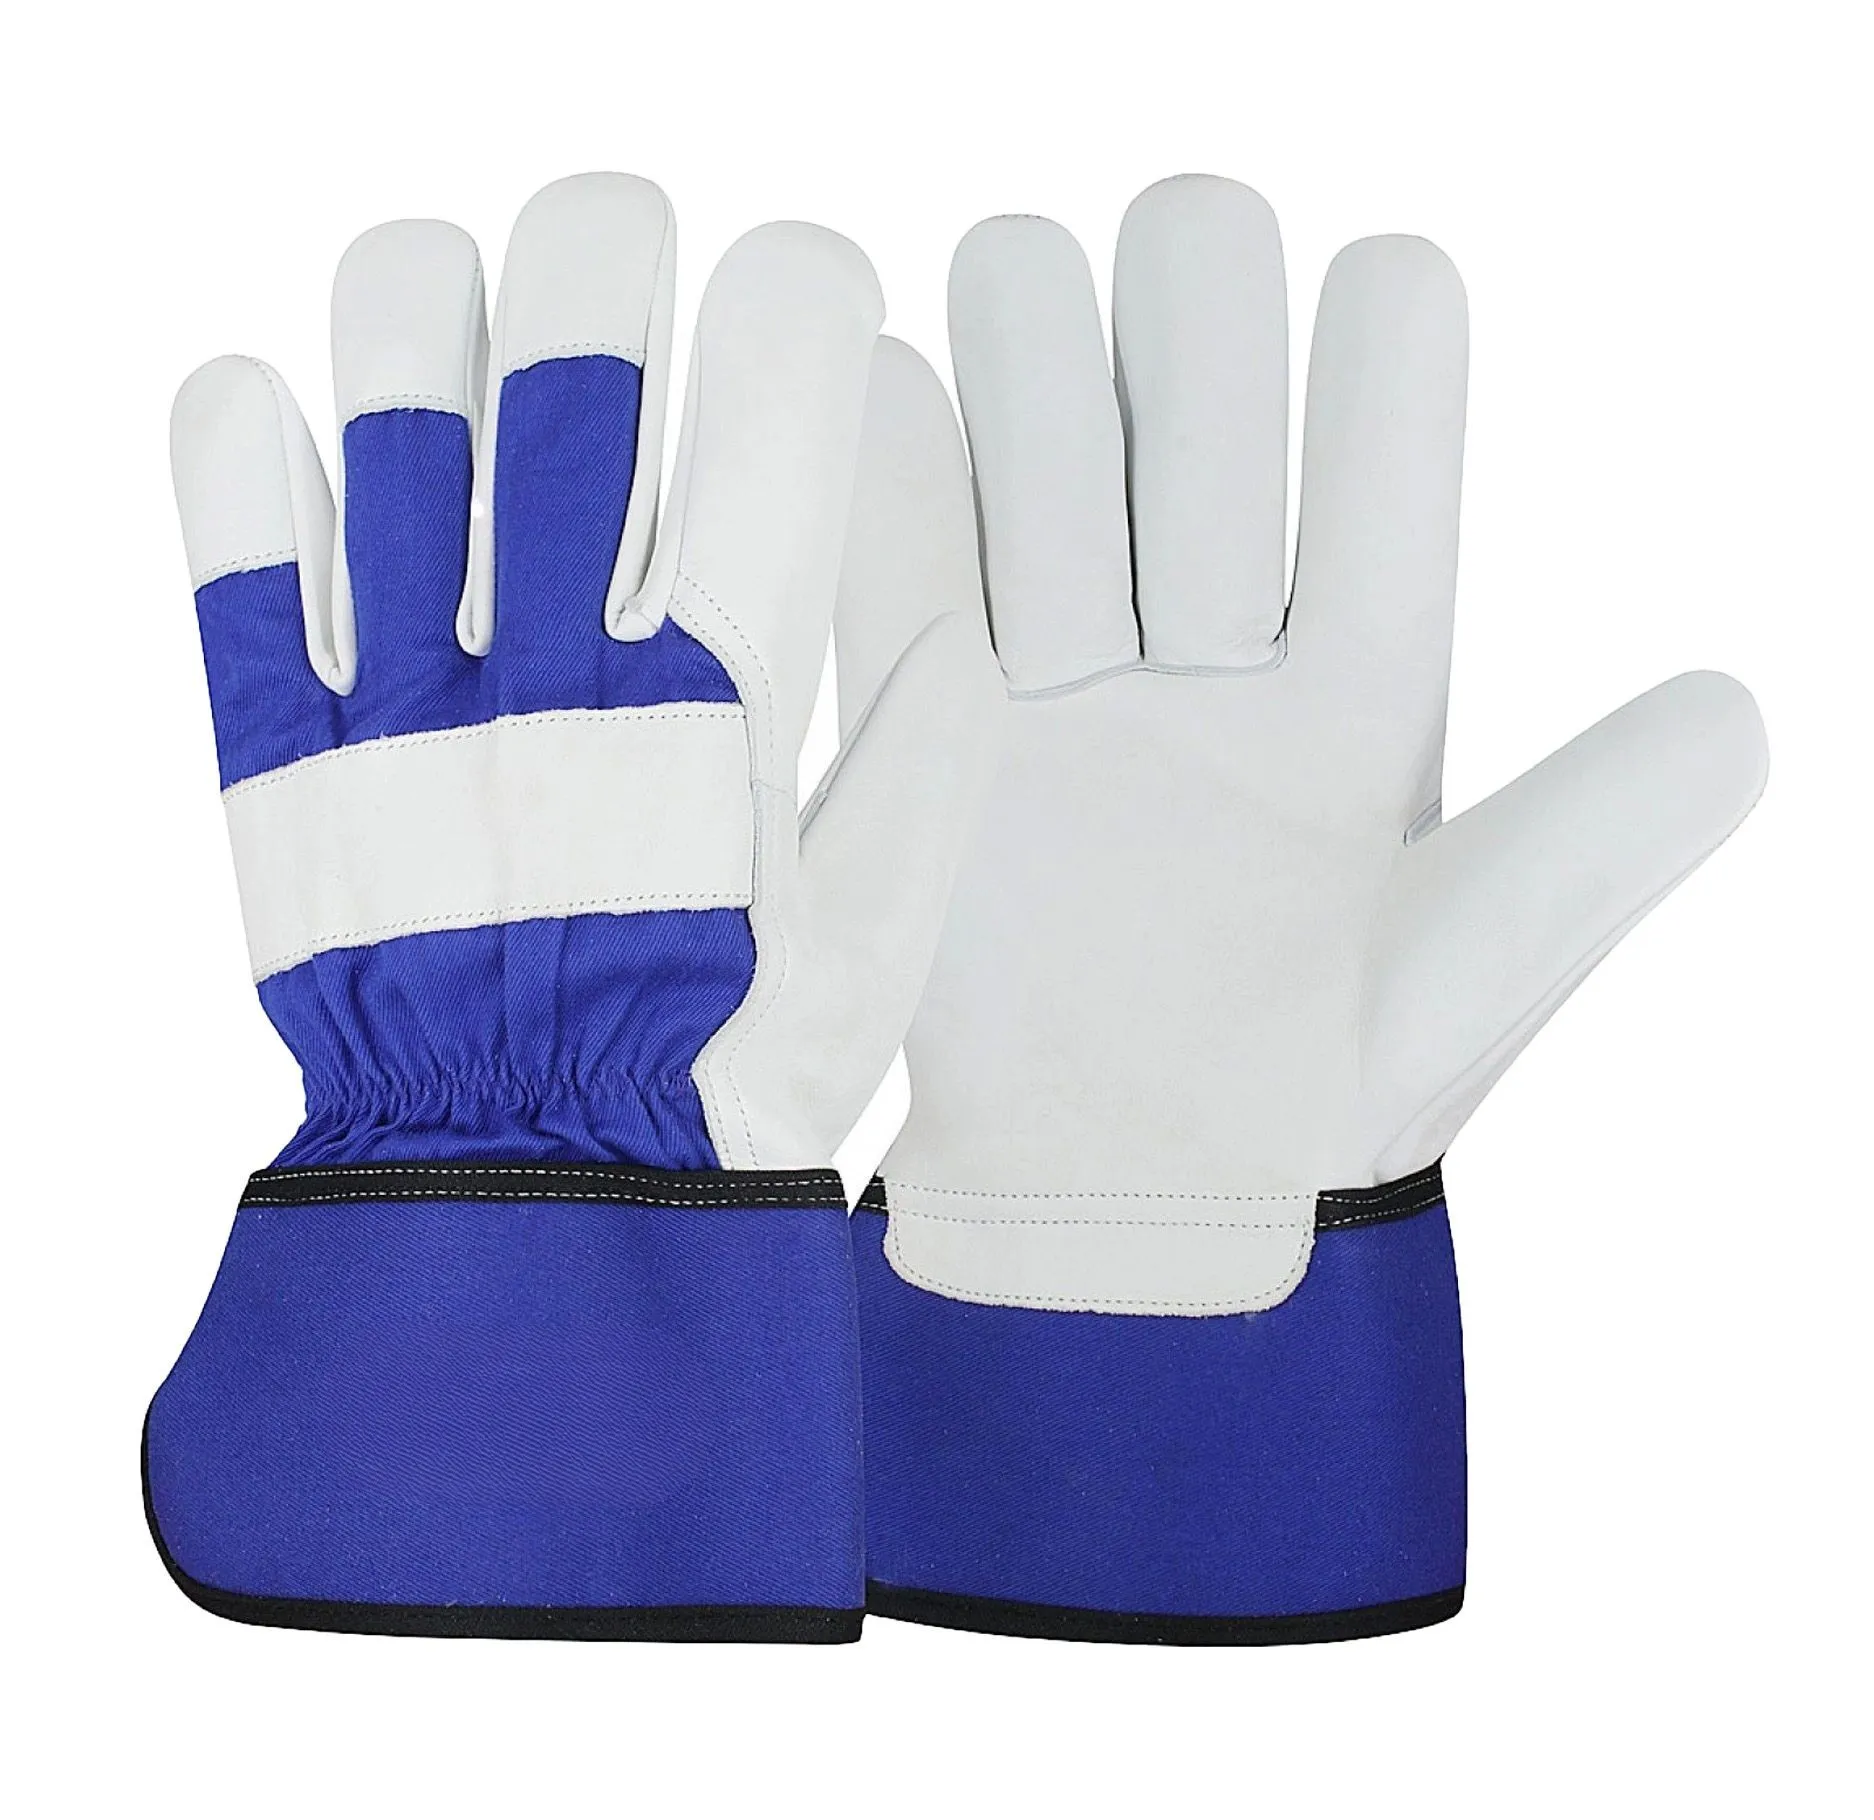 Großhandel Ingenieur Safety Rigger Bau handschuhe aus Leder Material Arbeits sicherheits handschuhe Hand Baumwolle Strick handschuh